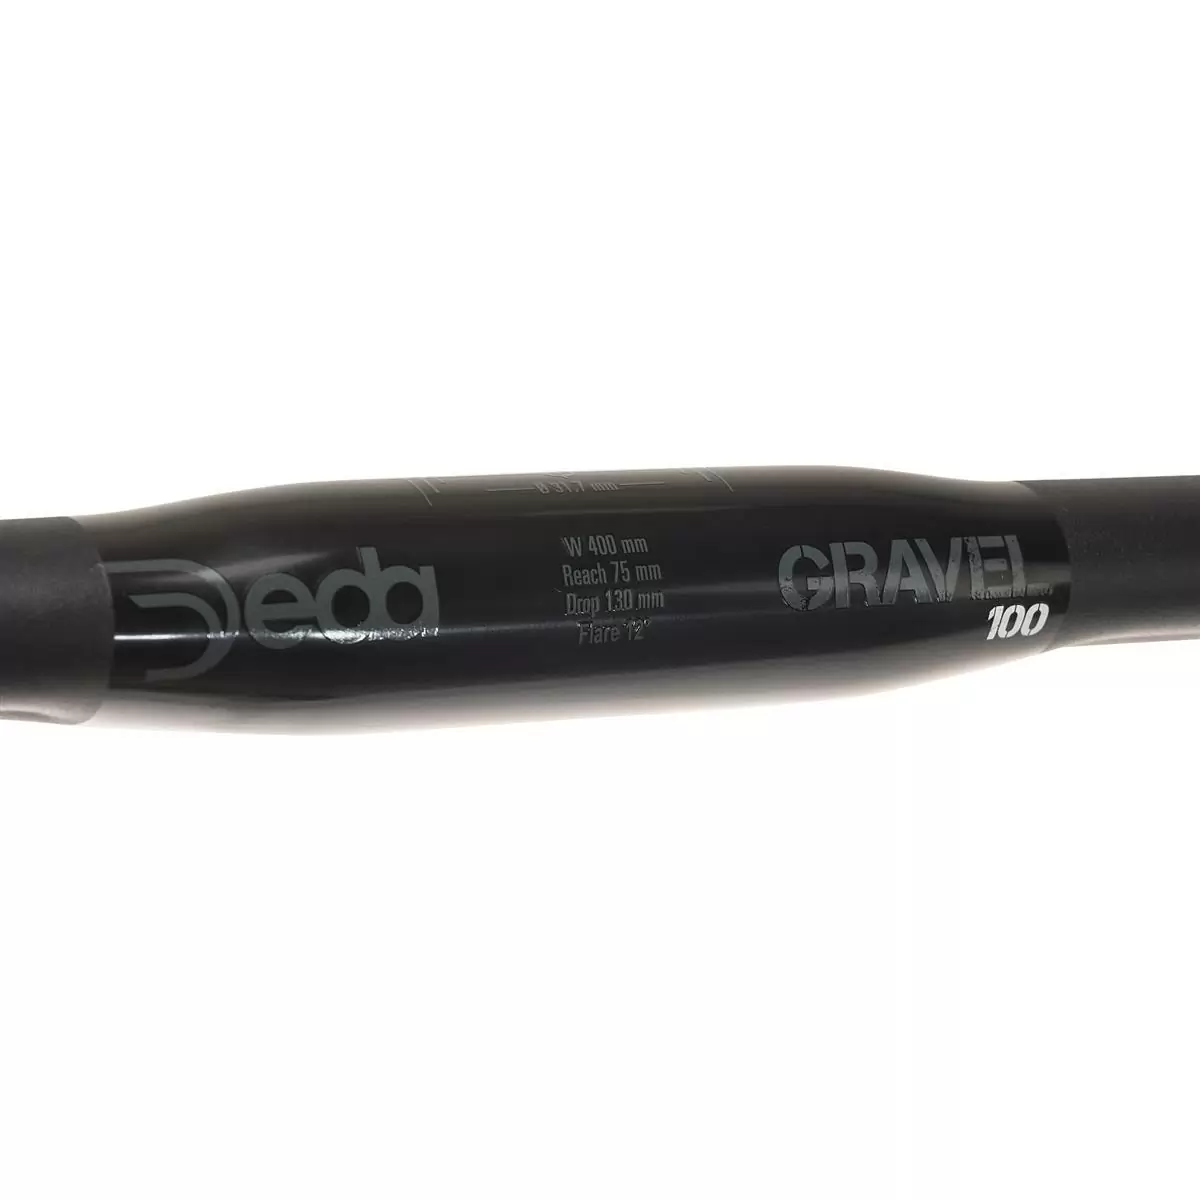 Guiador Gravel 100 440mm #4